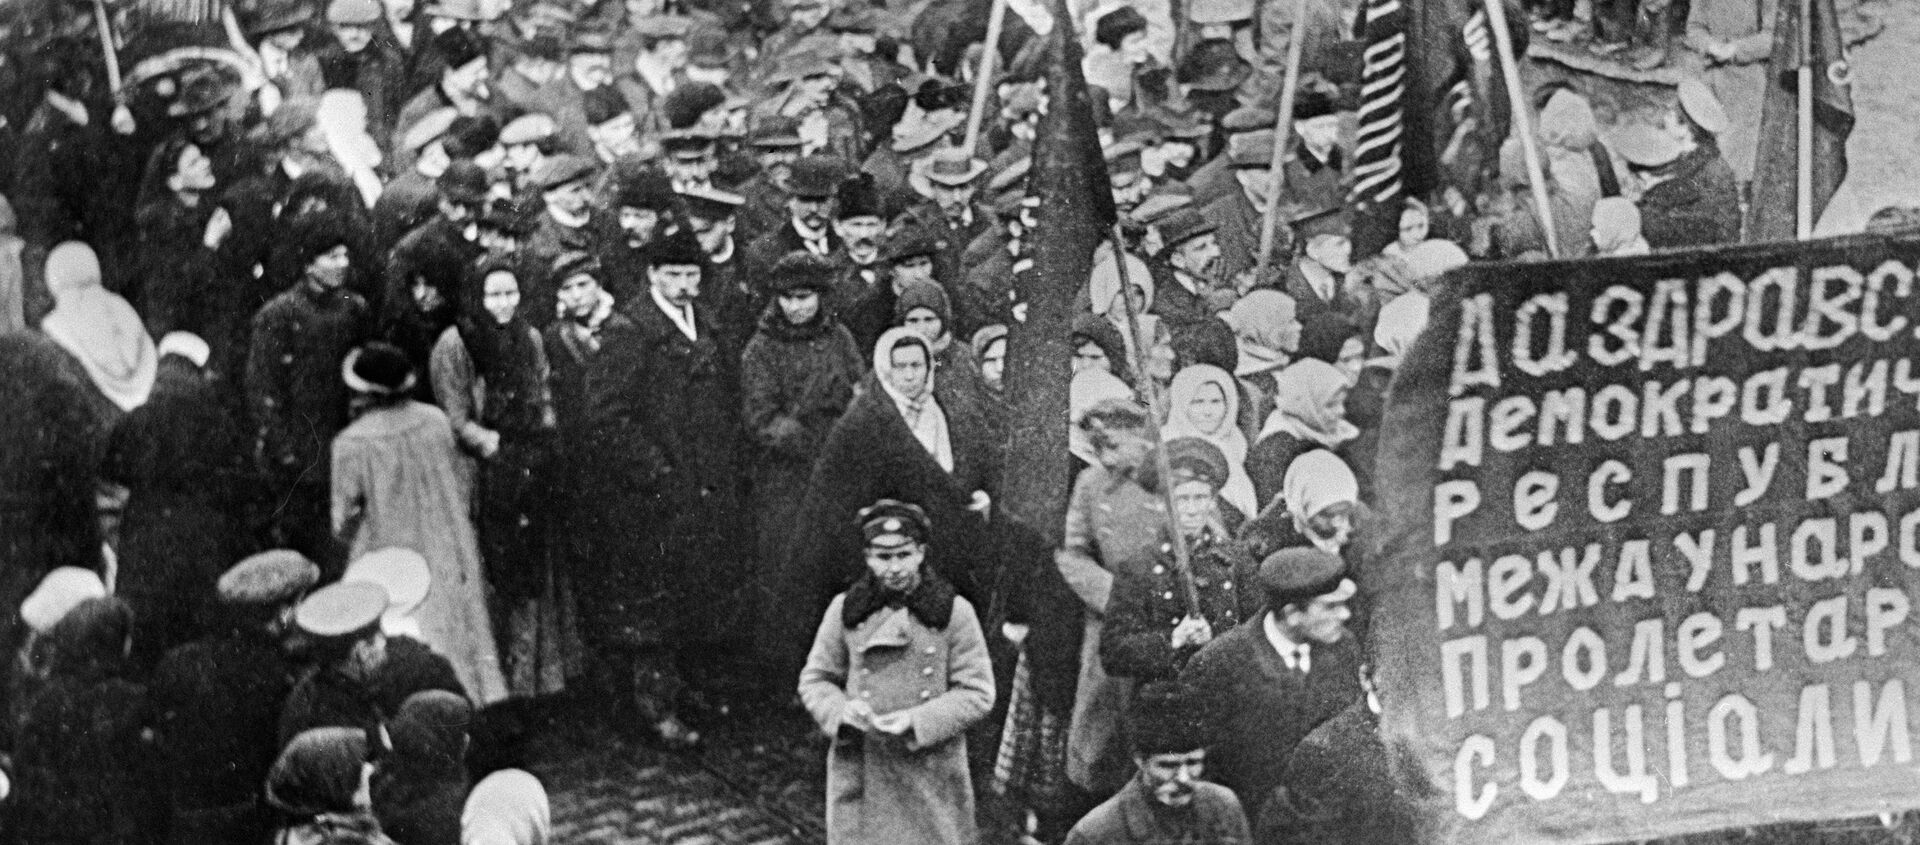 Una manifestación de protesta, 1917 - Sputnik Mundo, 1920, 30.07.2017